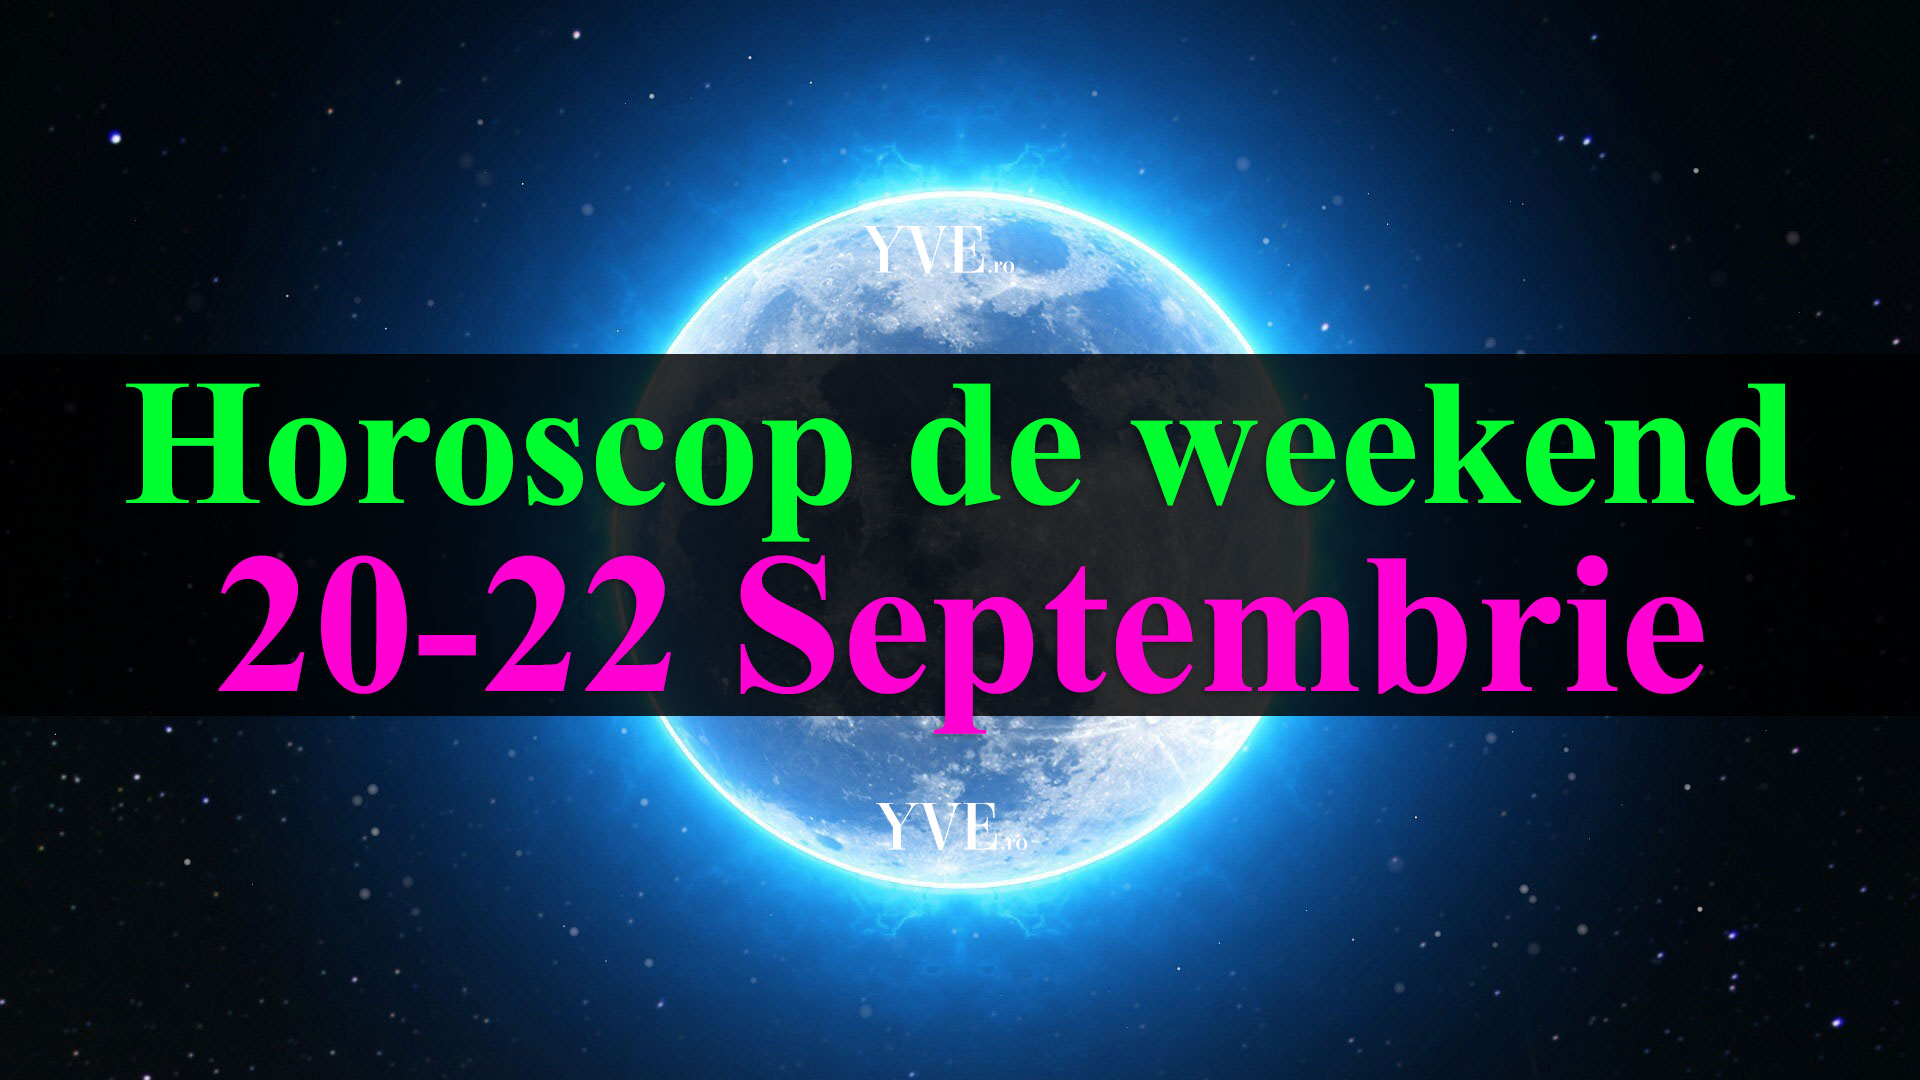 Horoscop de weekend 20-22 Septembrie 2019